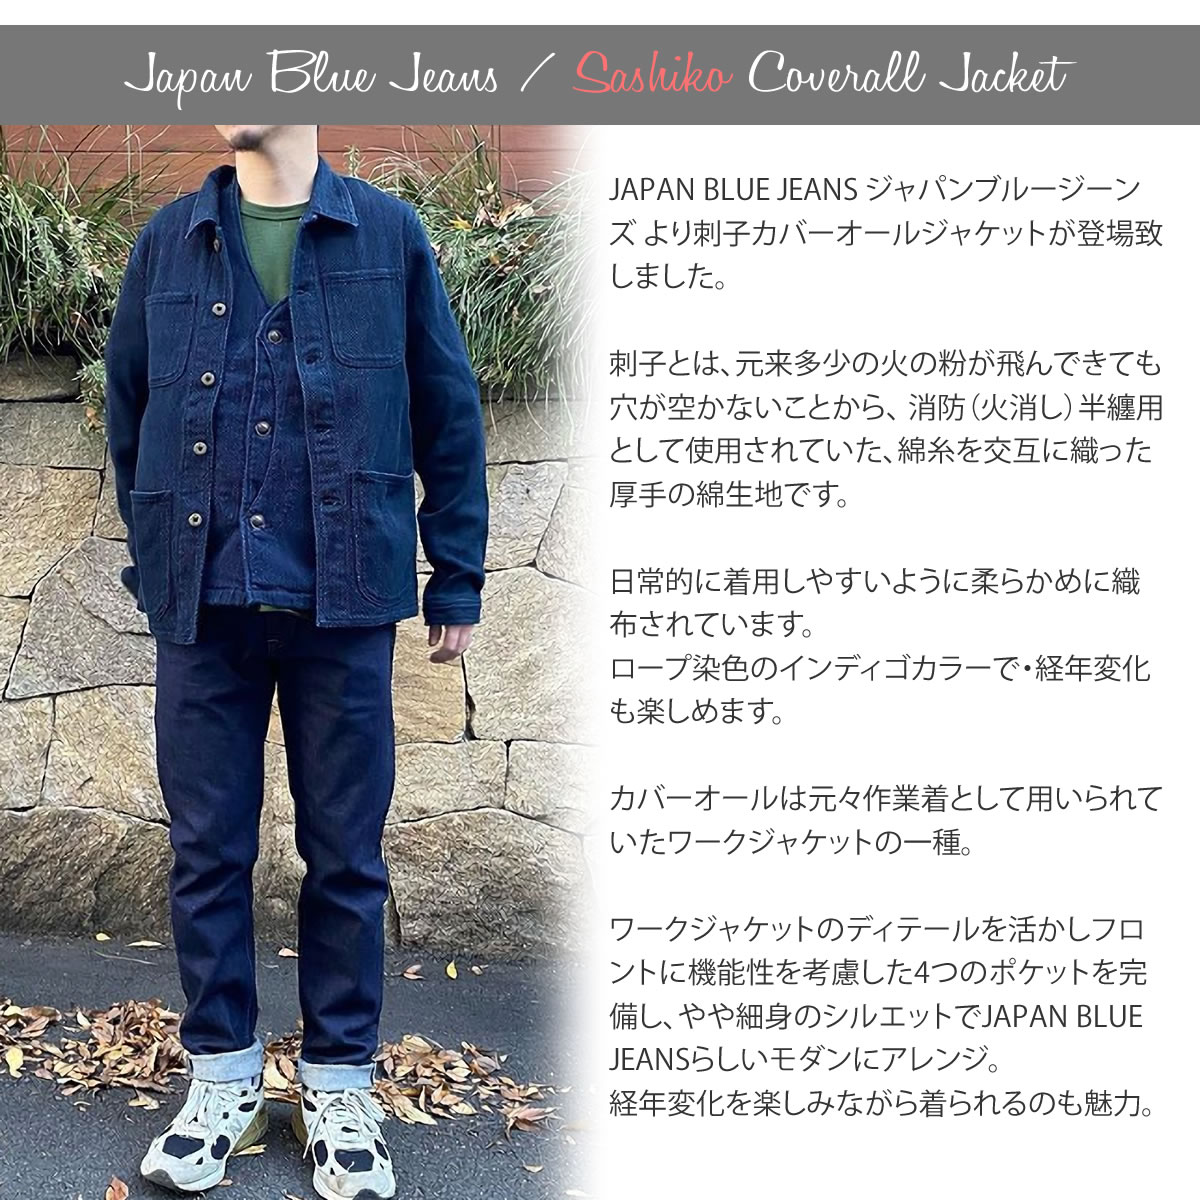 カバーオール ジャパンブルージーンズ インディゴ刺子 ジャケット Jacket JAPAN BLUE JEANS 刺し子 サシコ コート  ワークジャケット デニムジャケット